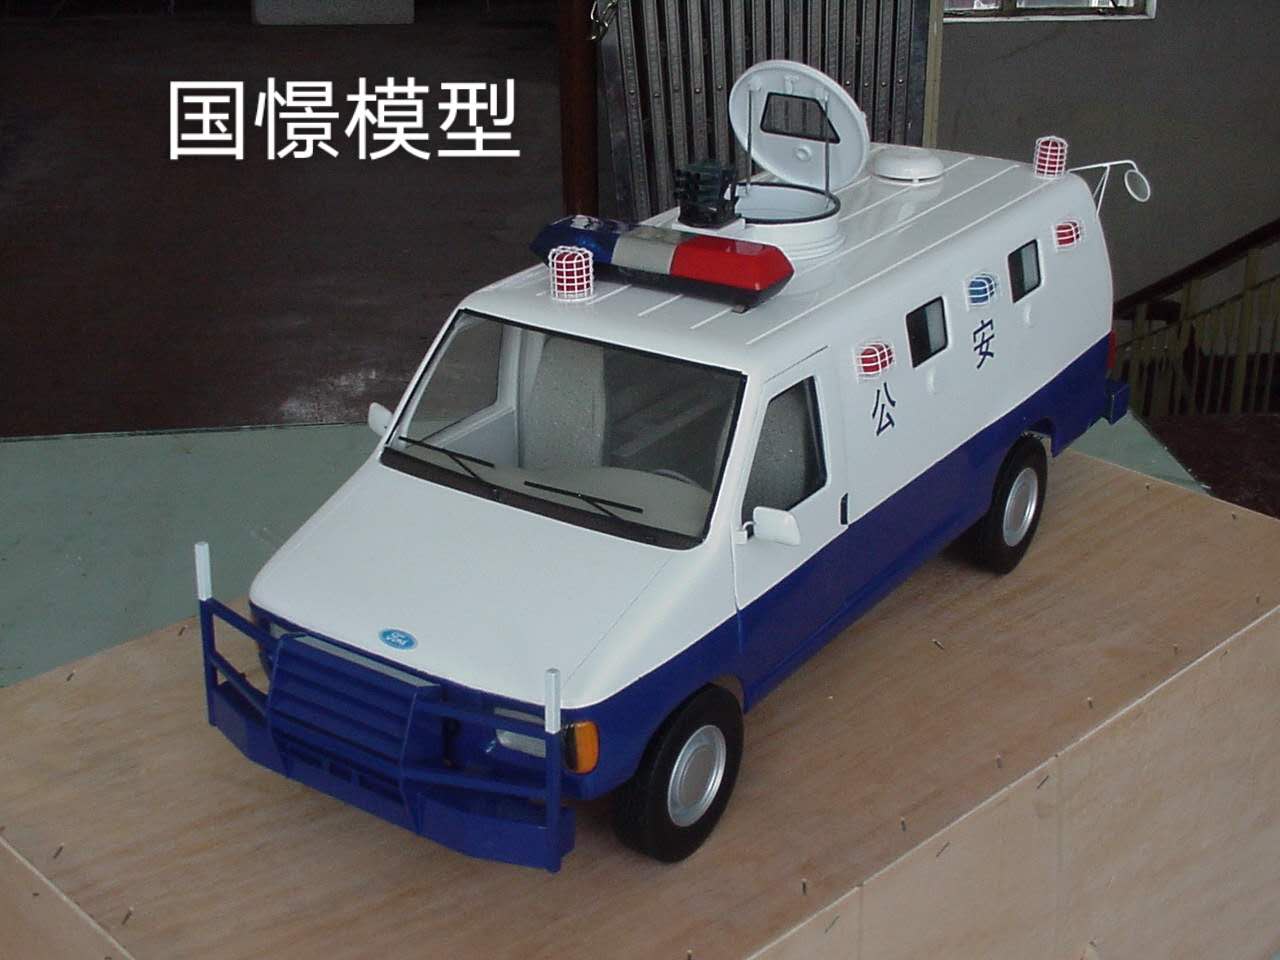 甘泉县车辆模型